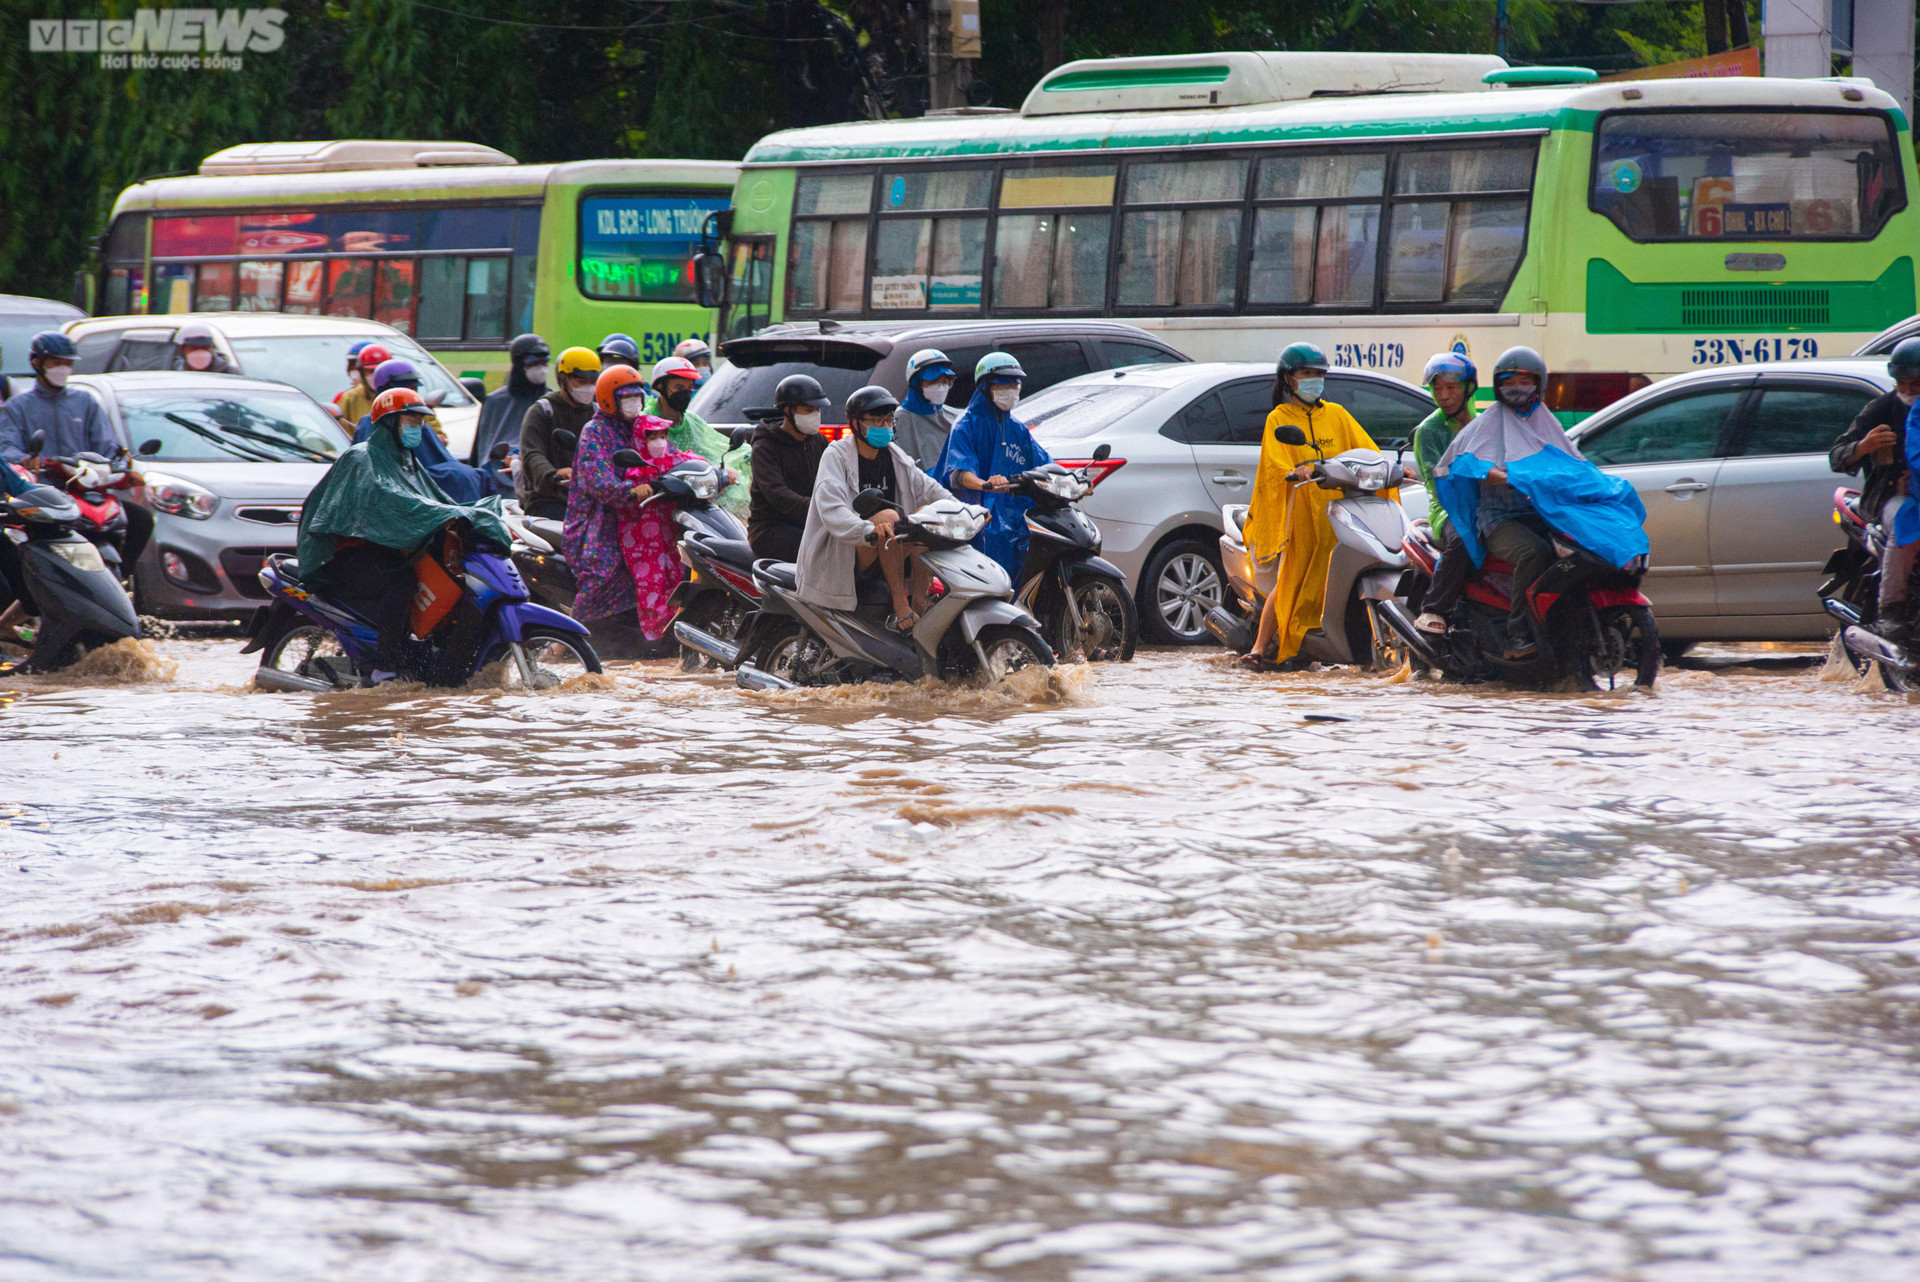 Người dân TP.HCM bì bõm lội nước về nhà sau cơn mưa lớn kéo dài hàng giờ - 2